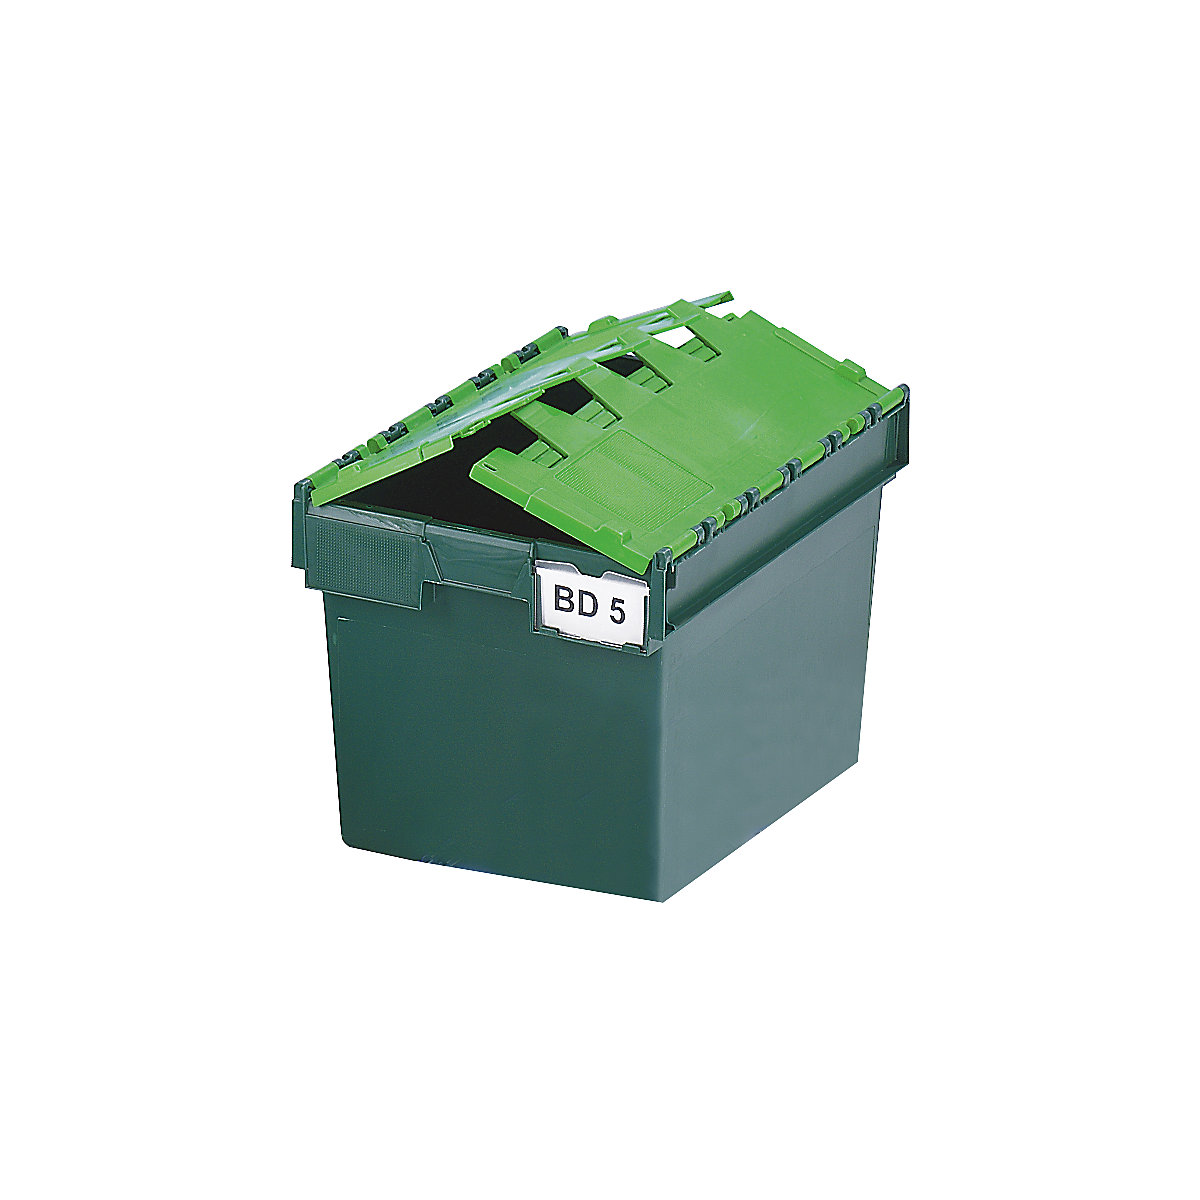 Spremnik za slaganje za višekratnu uporabu s preklopnim poklopcem, volumen 64 litara, DxŠxV 600 x 400 x 365 mm, u zelenoj boji